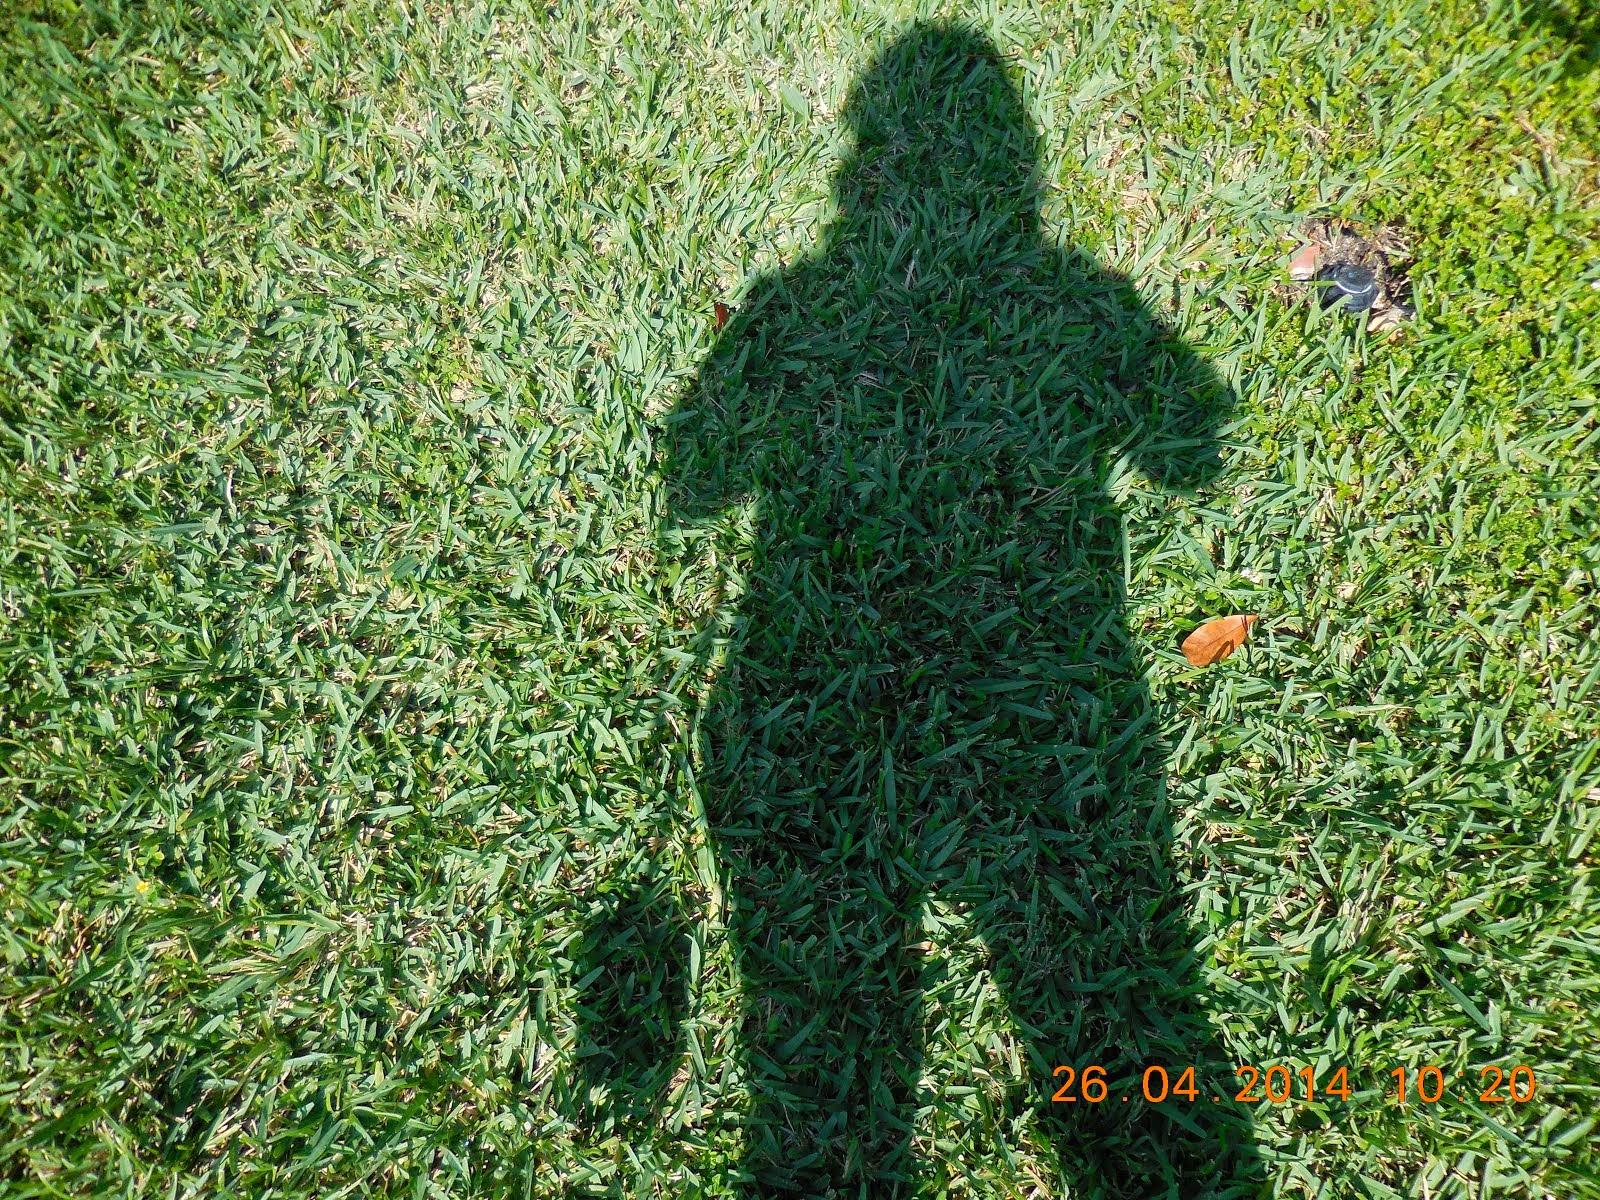 Mi sombra o perfil en el pasto. Soy aficionada a la fotografía.